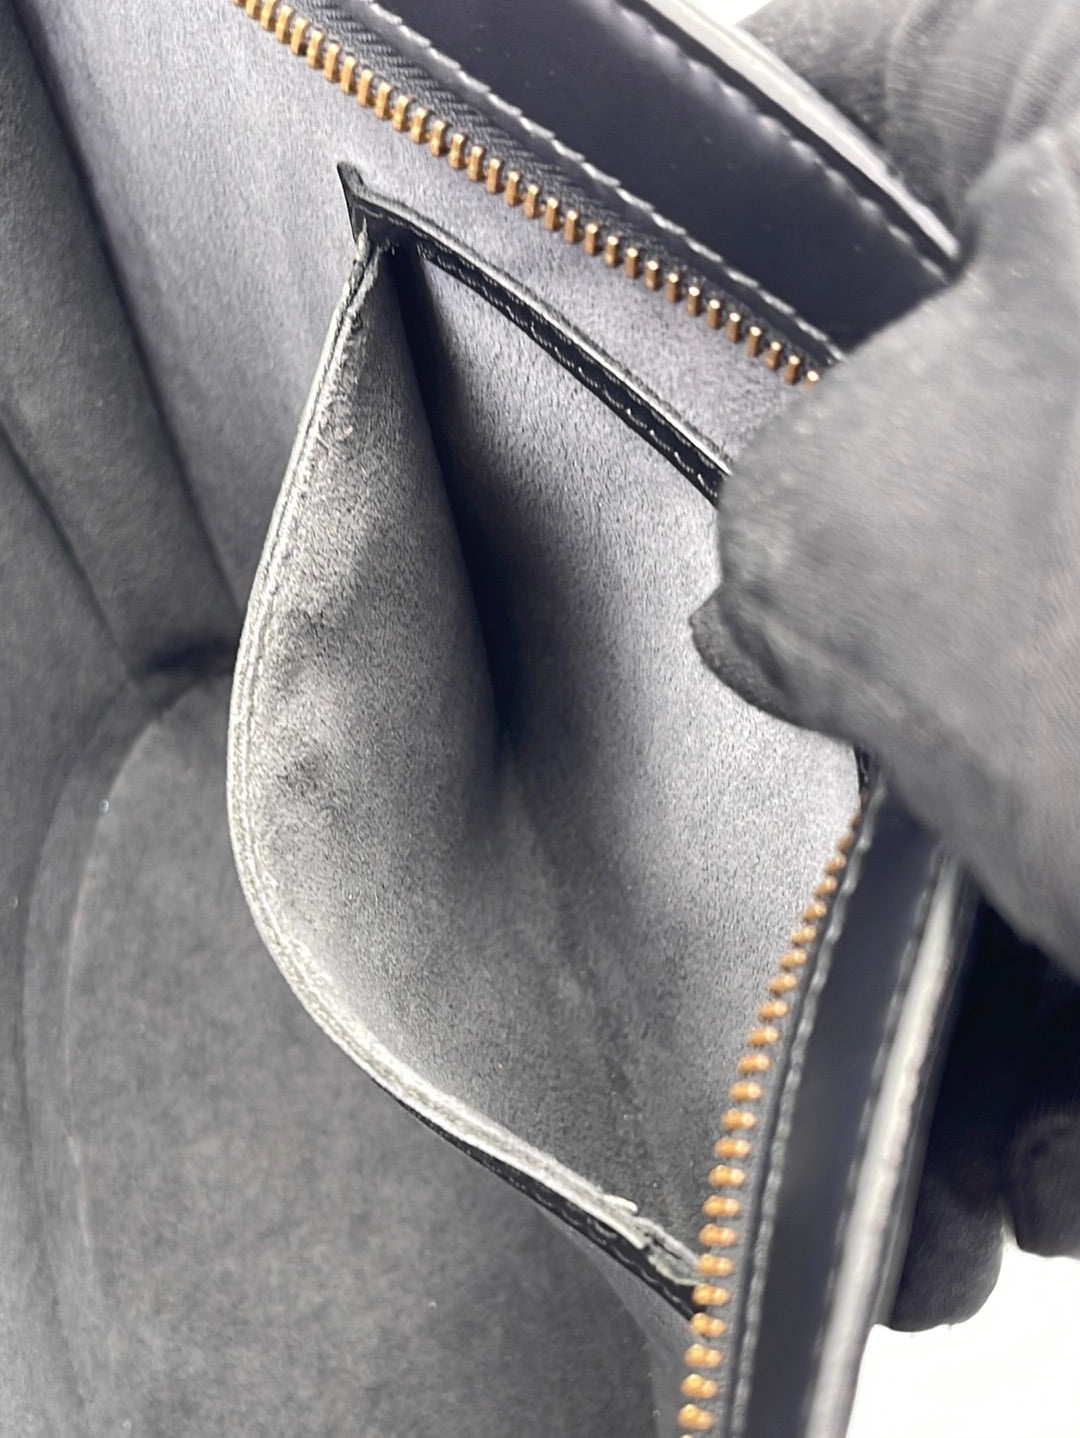 Louis Vuitton Vintage - Epi Saint Jacques PM Bag - Black - Leather